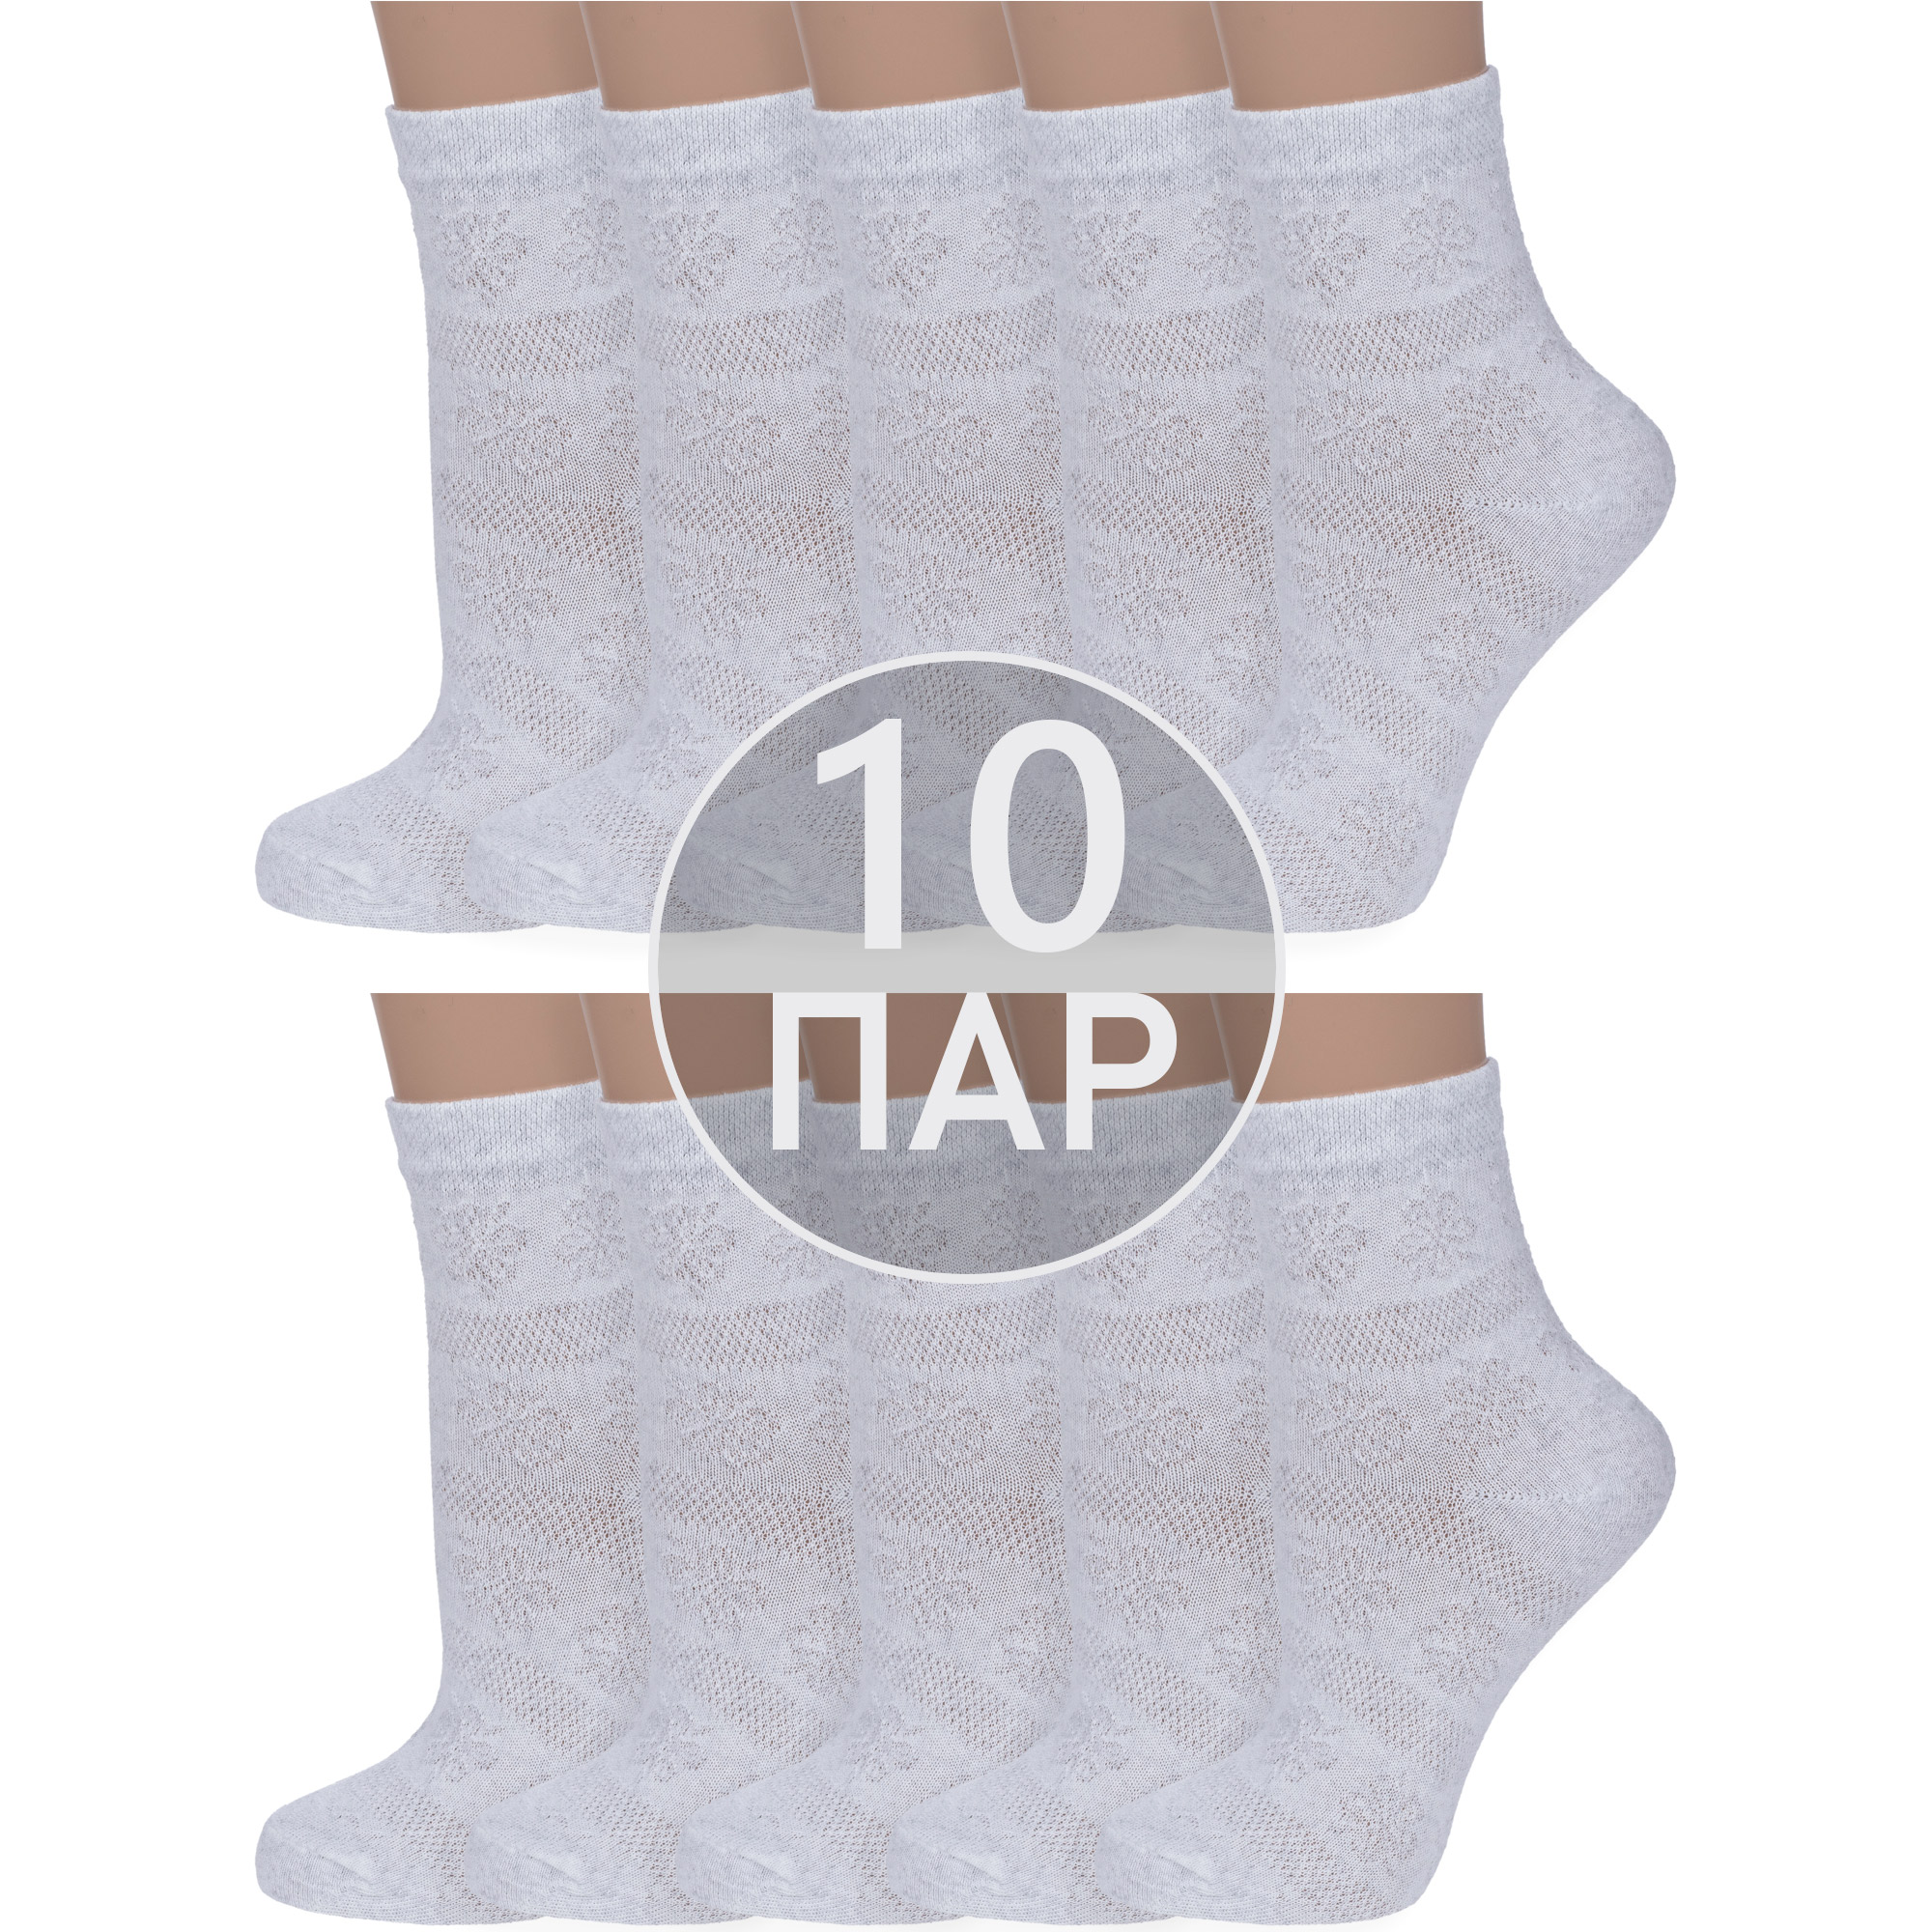 

Комплект носков женских Альтаир 10-С117 серых 35-37, Серый, 10-С117